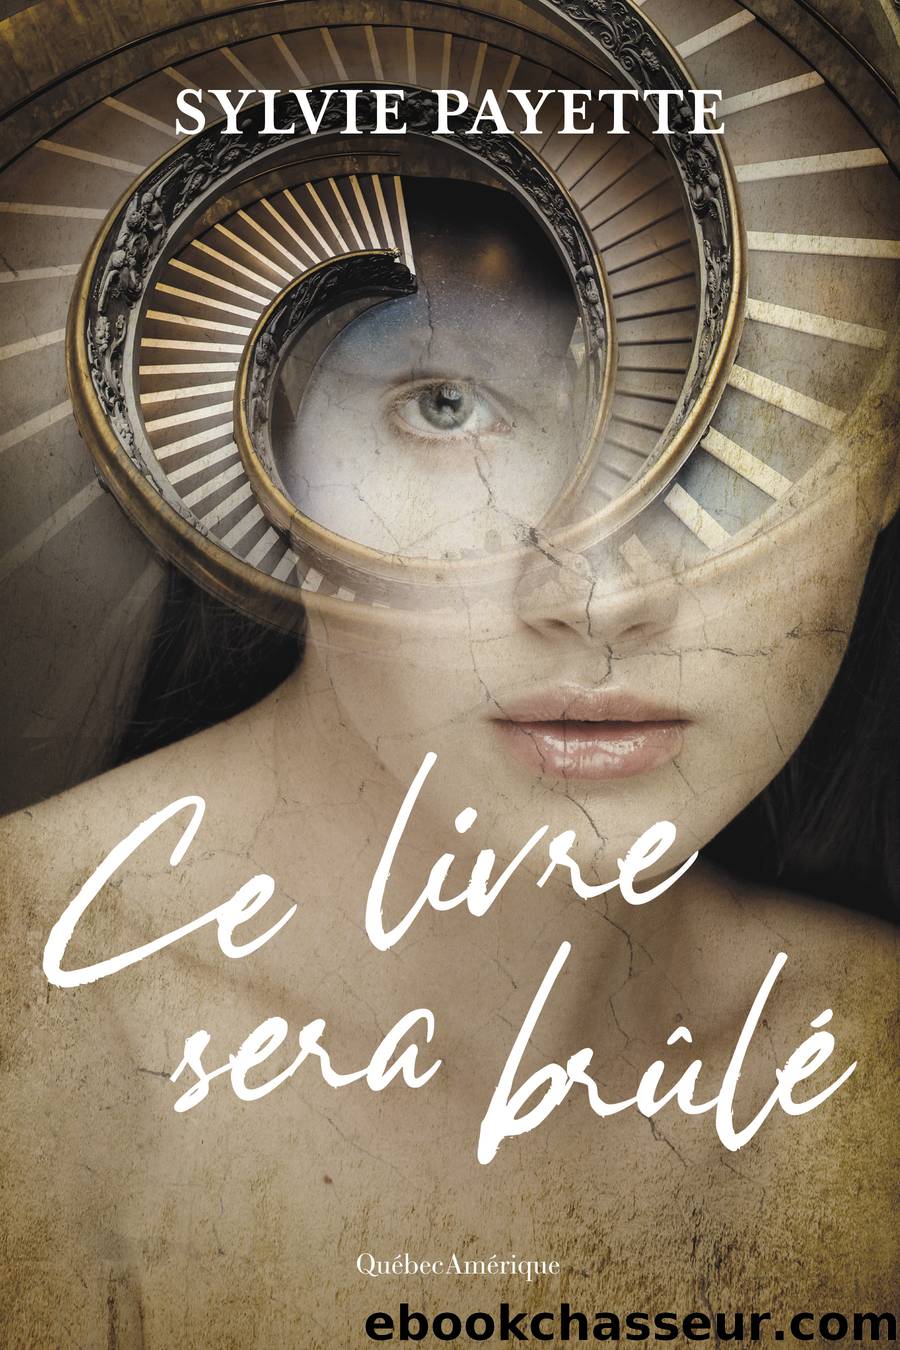 Ce livre sera brÃ»lÃ© by Sylvie Payette